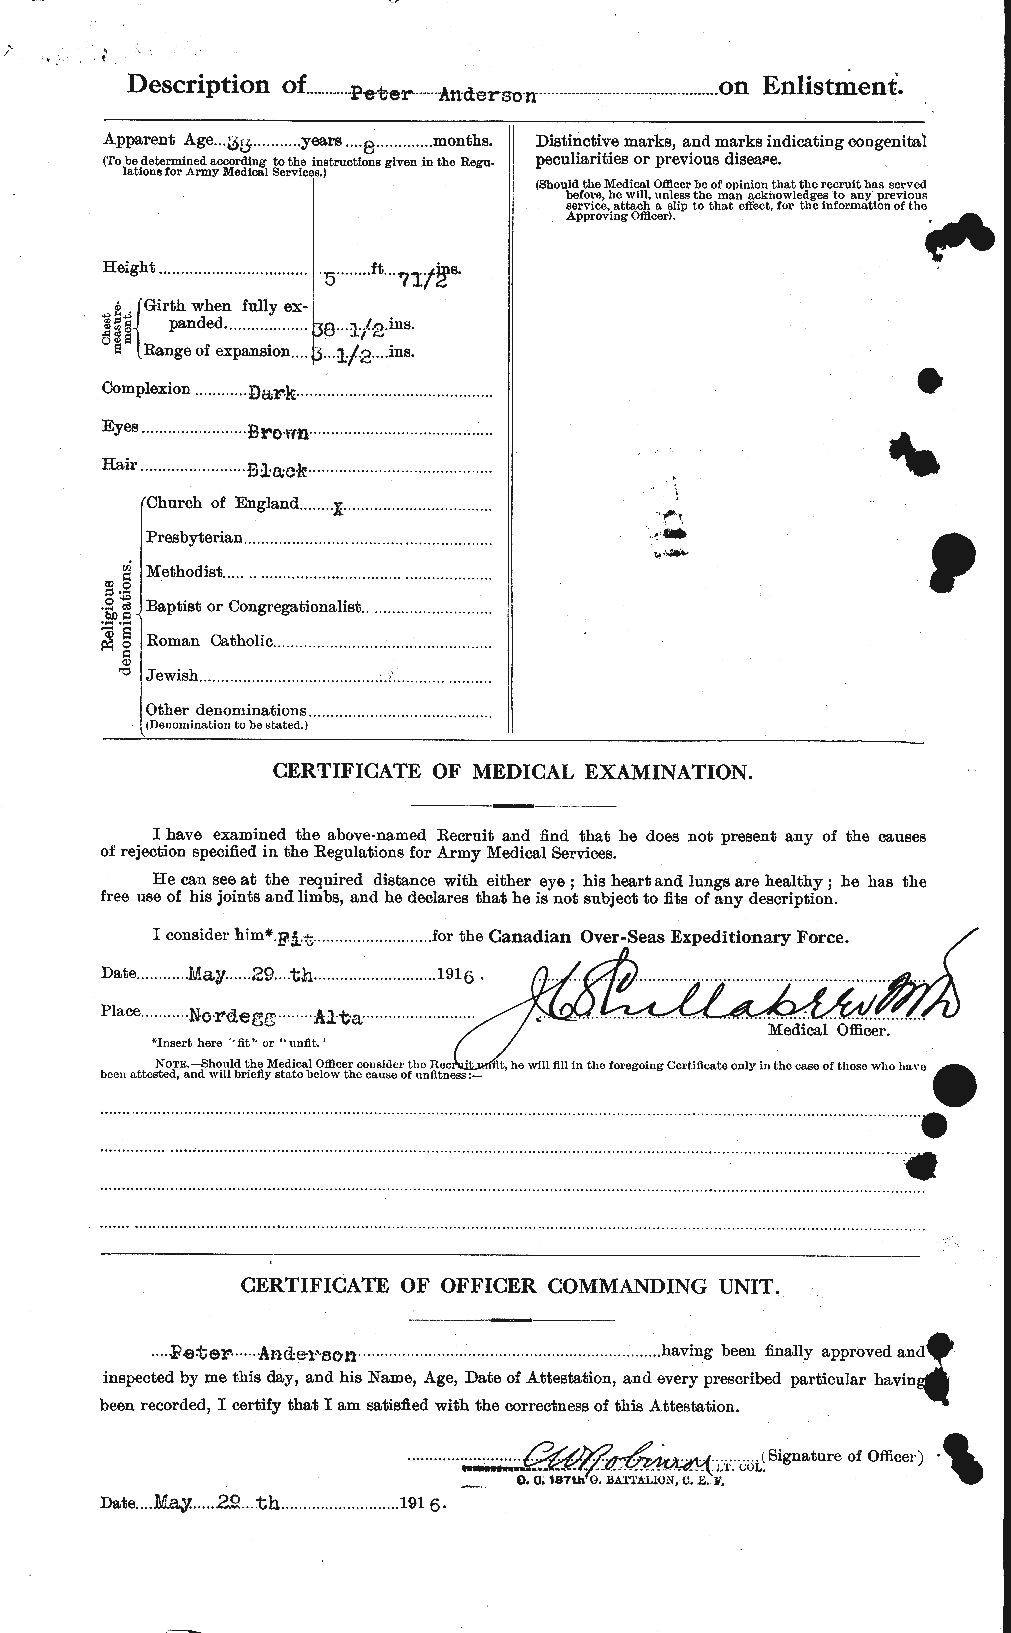 Dossiers du Personnel de la Première Guerre mondiale - CEC 207349b